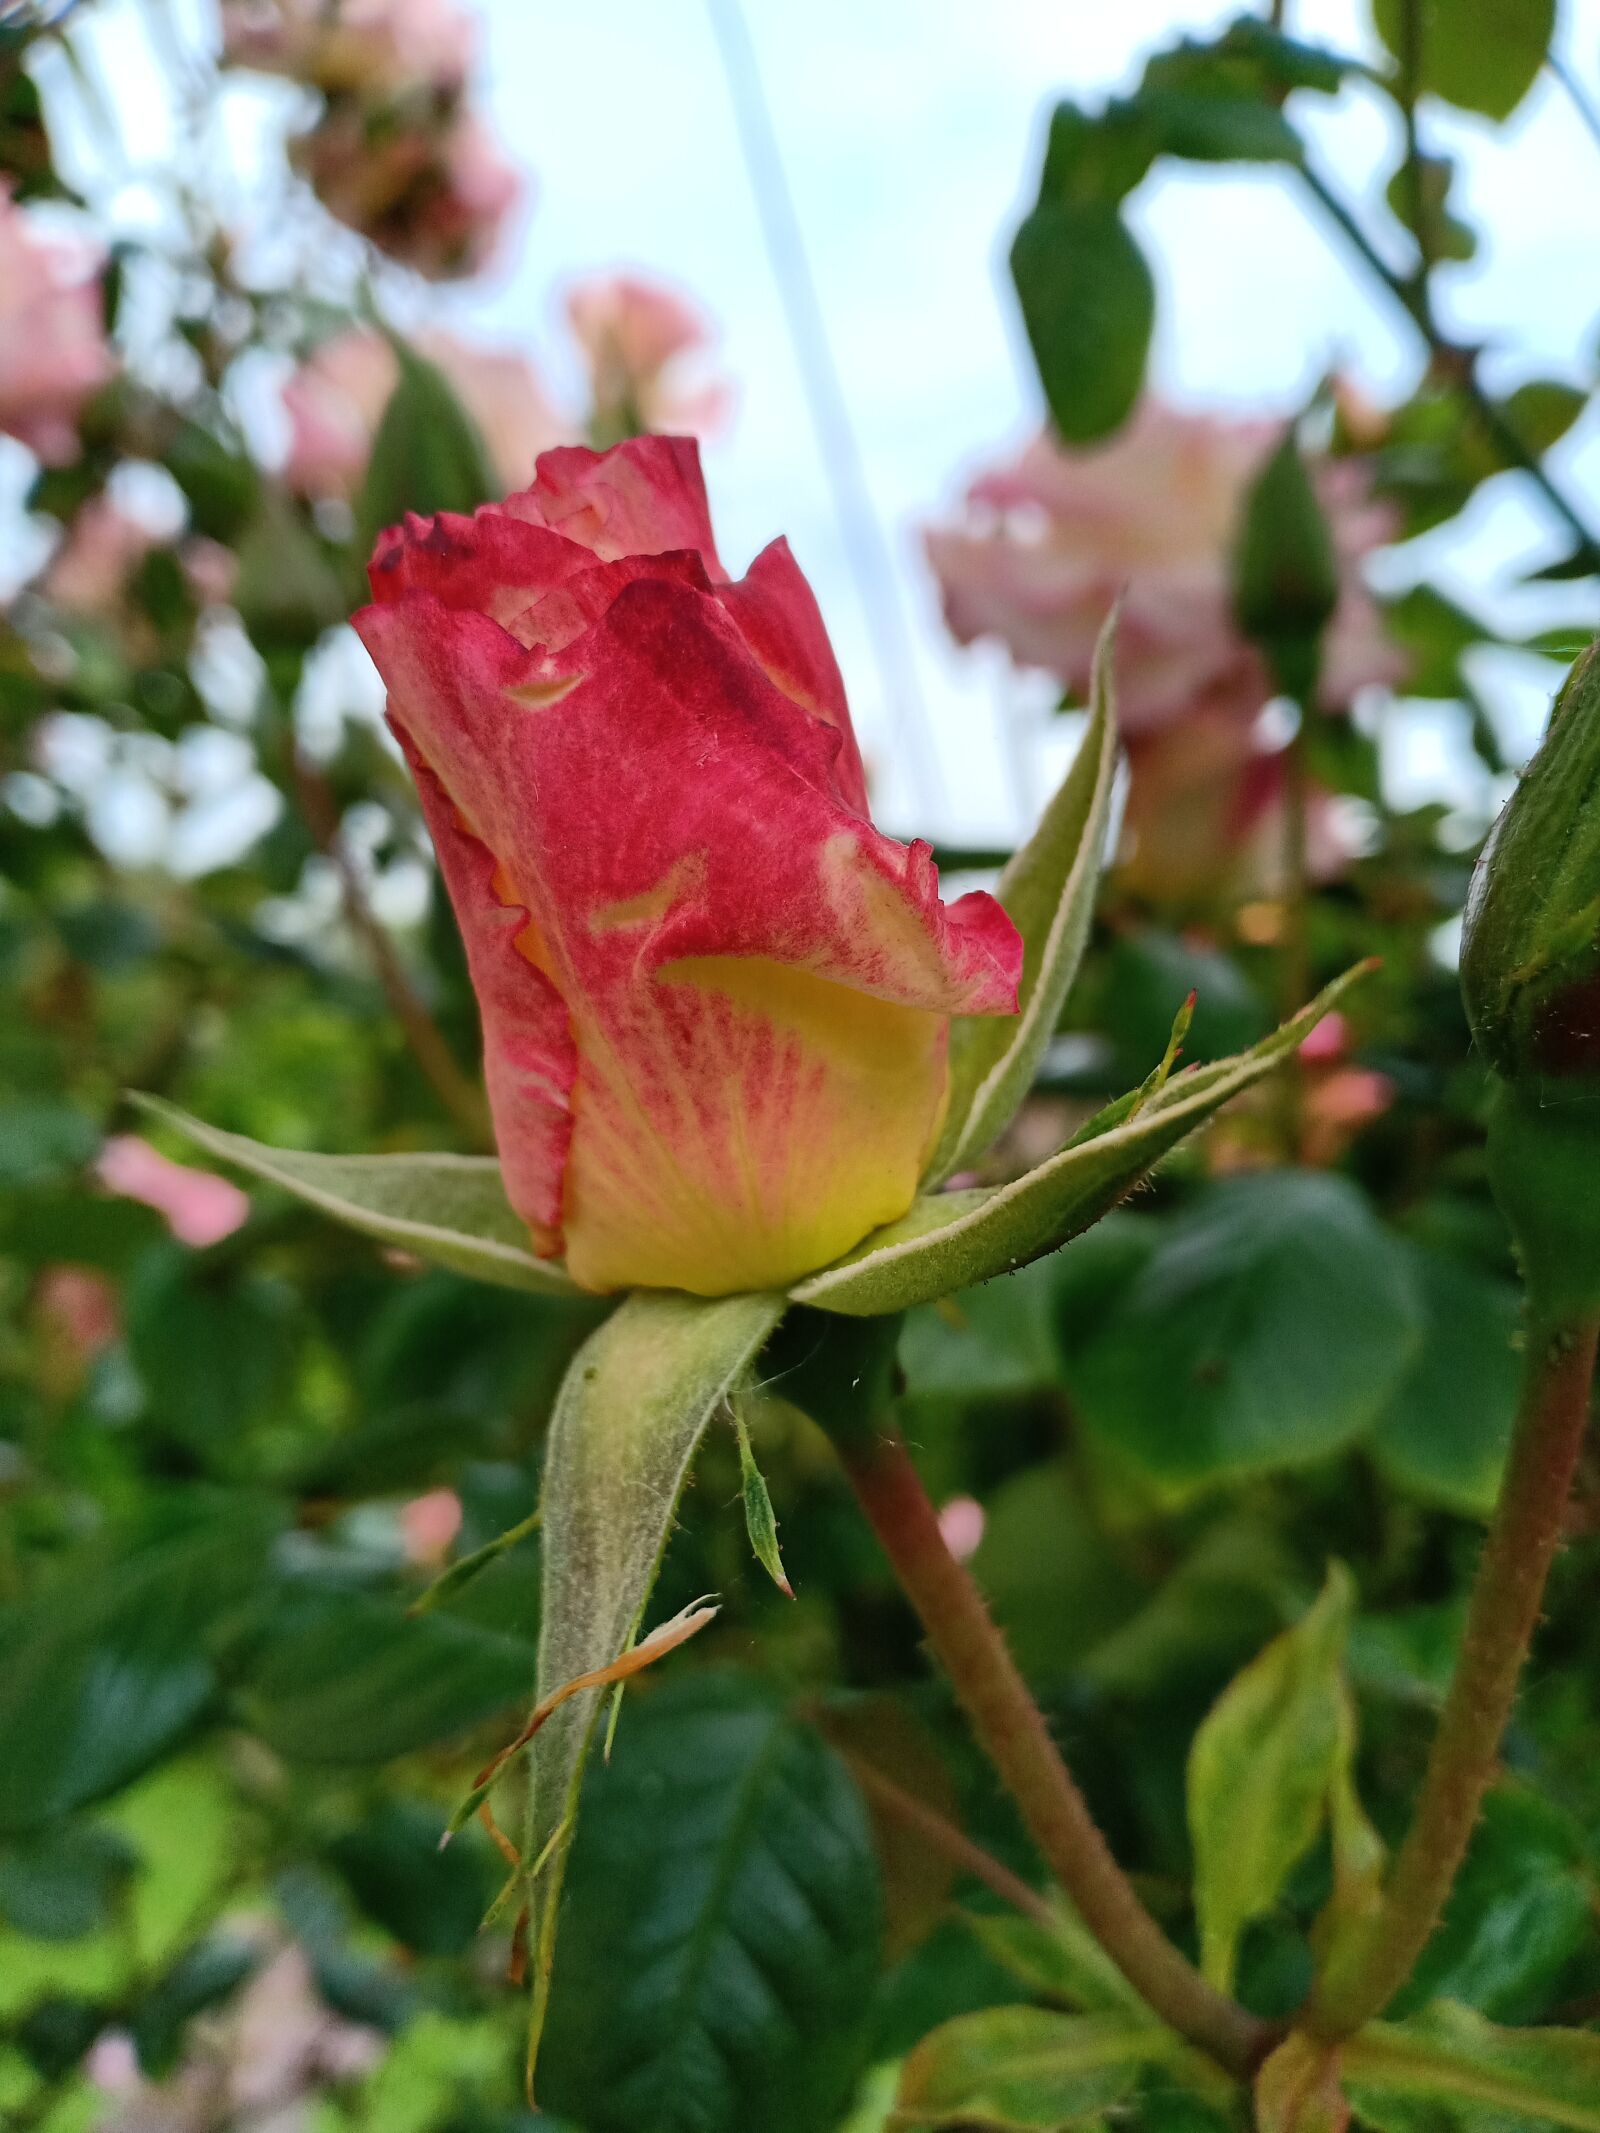 OPPO F7 sample photo. Rose, rosebud, flower bud photography